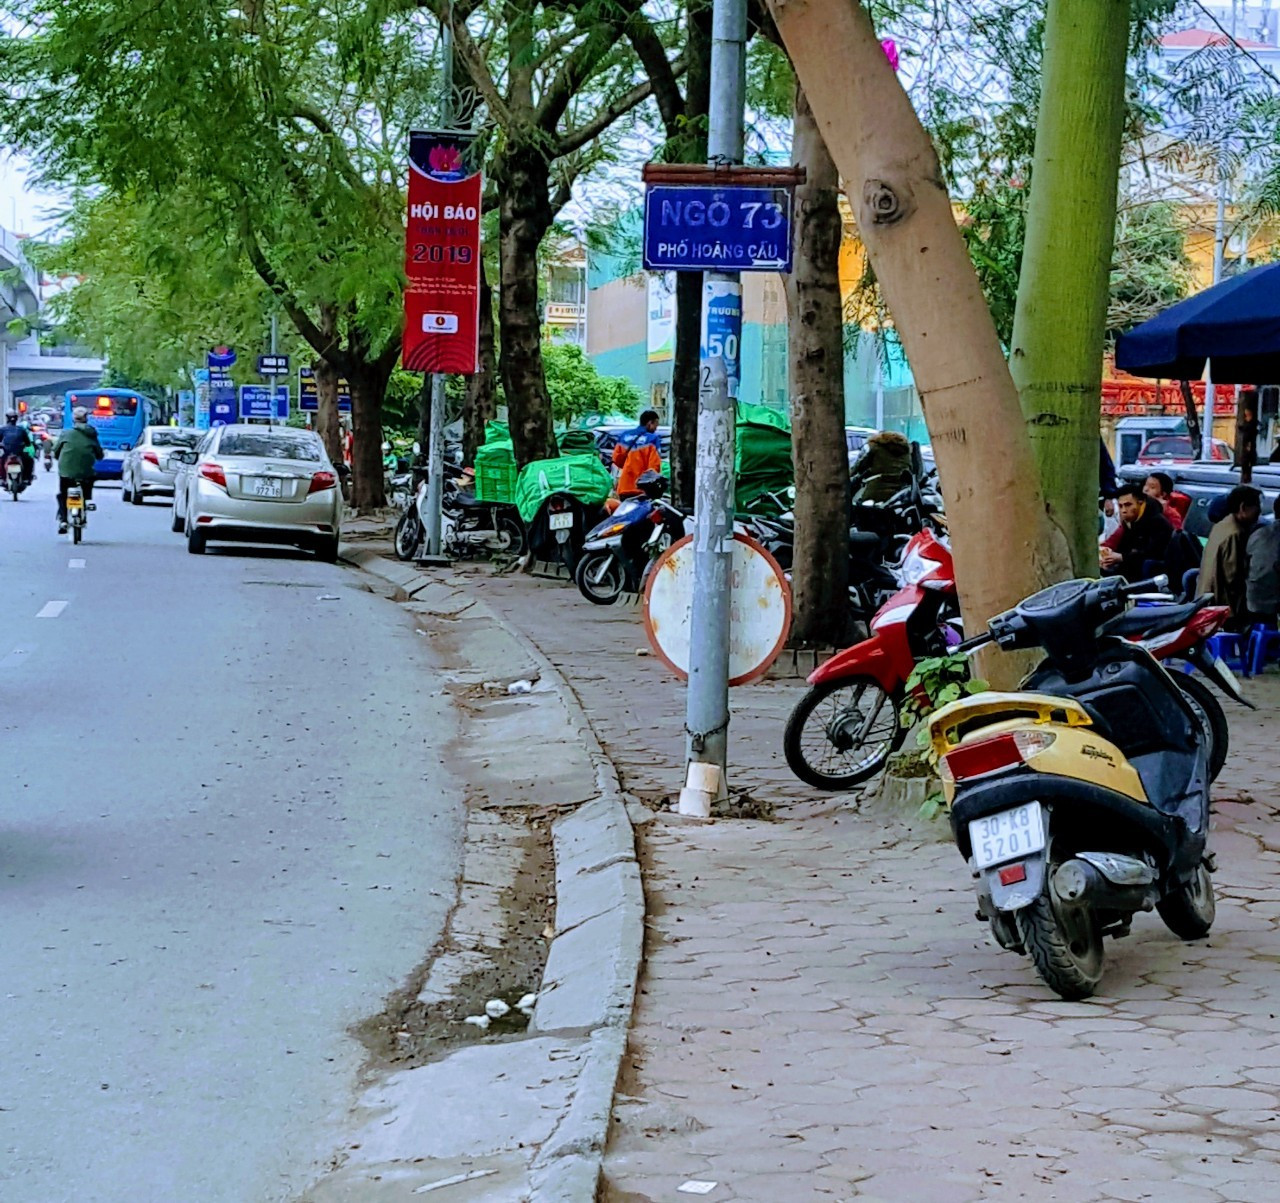 Hà Nội,Quận Đống Đa, Phường Ô Chợ Dừa: lòng đường vỉa hè bị xẻ thịt, lấn chiếm một cách ngang nhiên